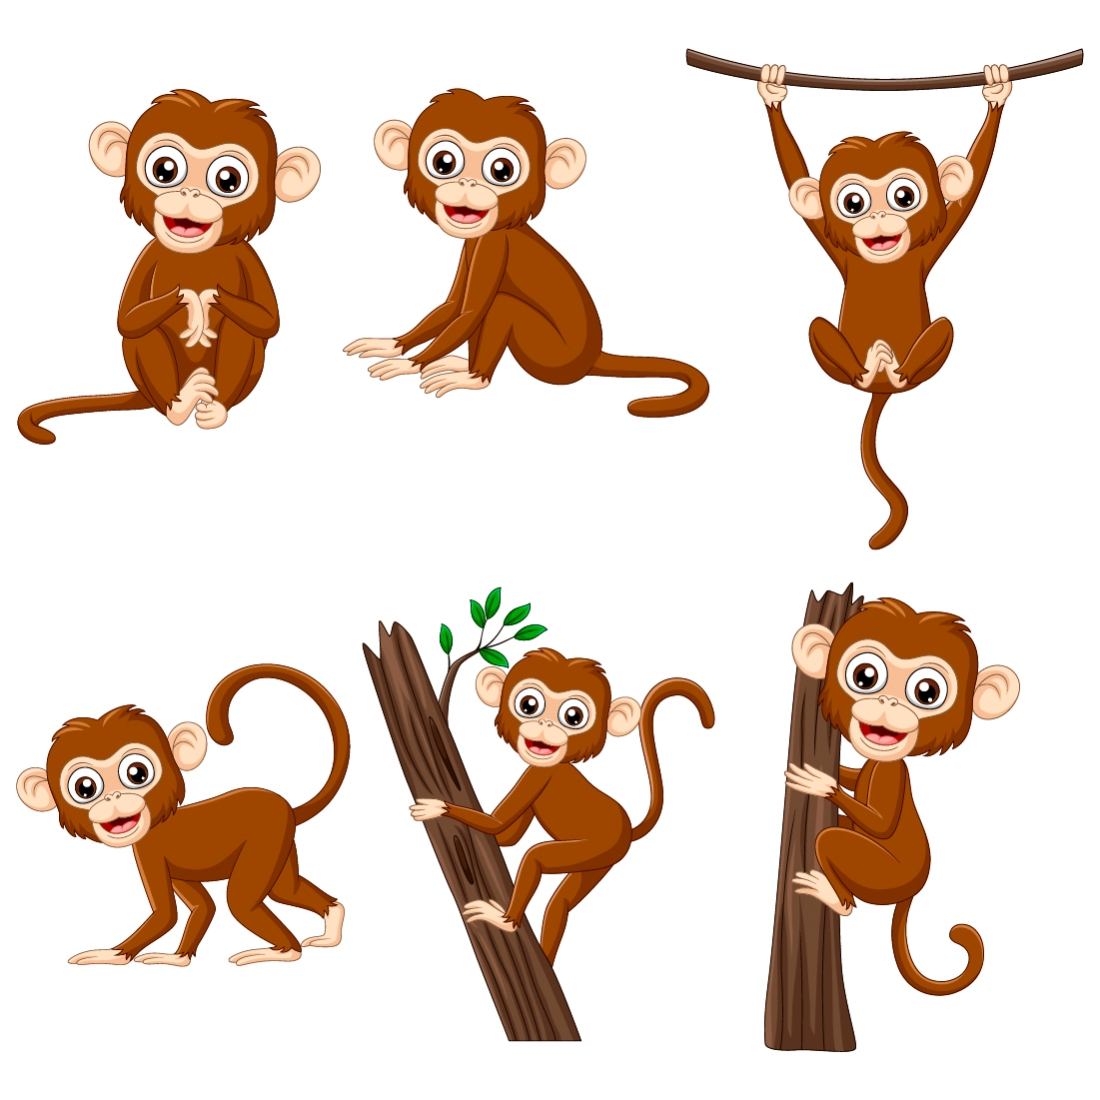 3 cartoon monkeys in trees